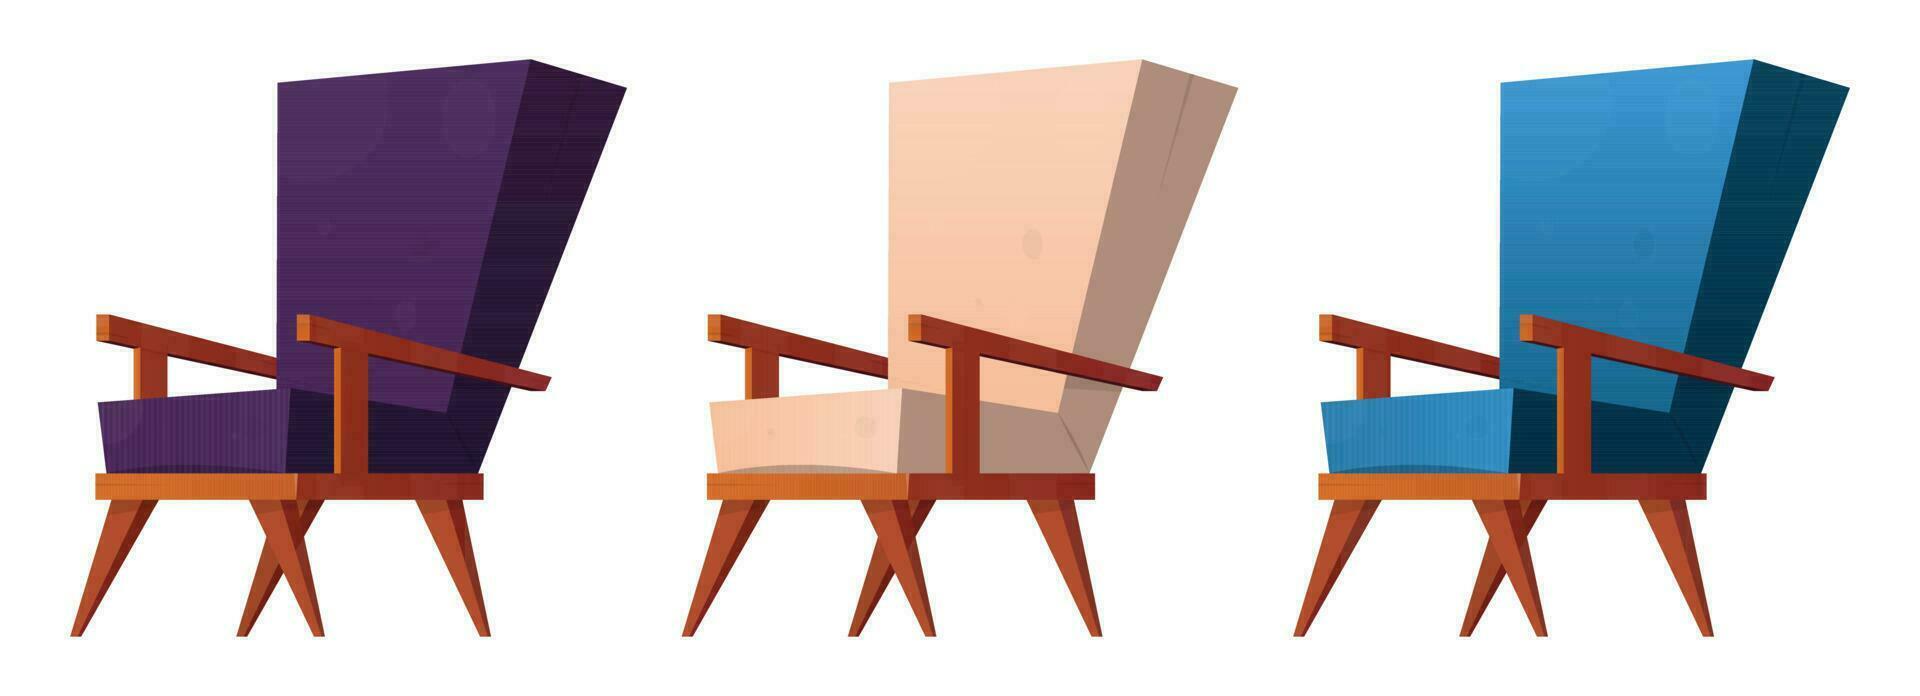 fauteuil collection dans dessin animé style vecteur illustration isolé sur blanc